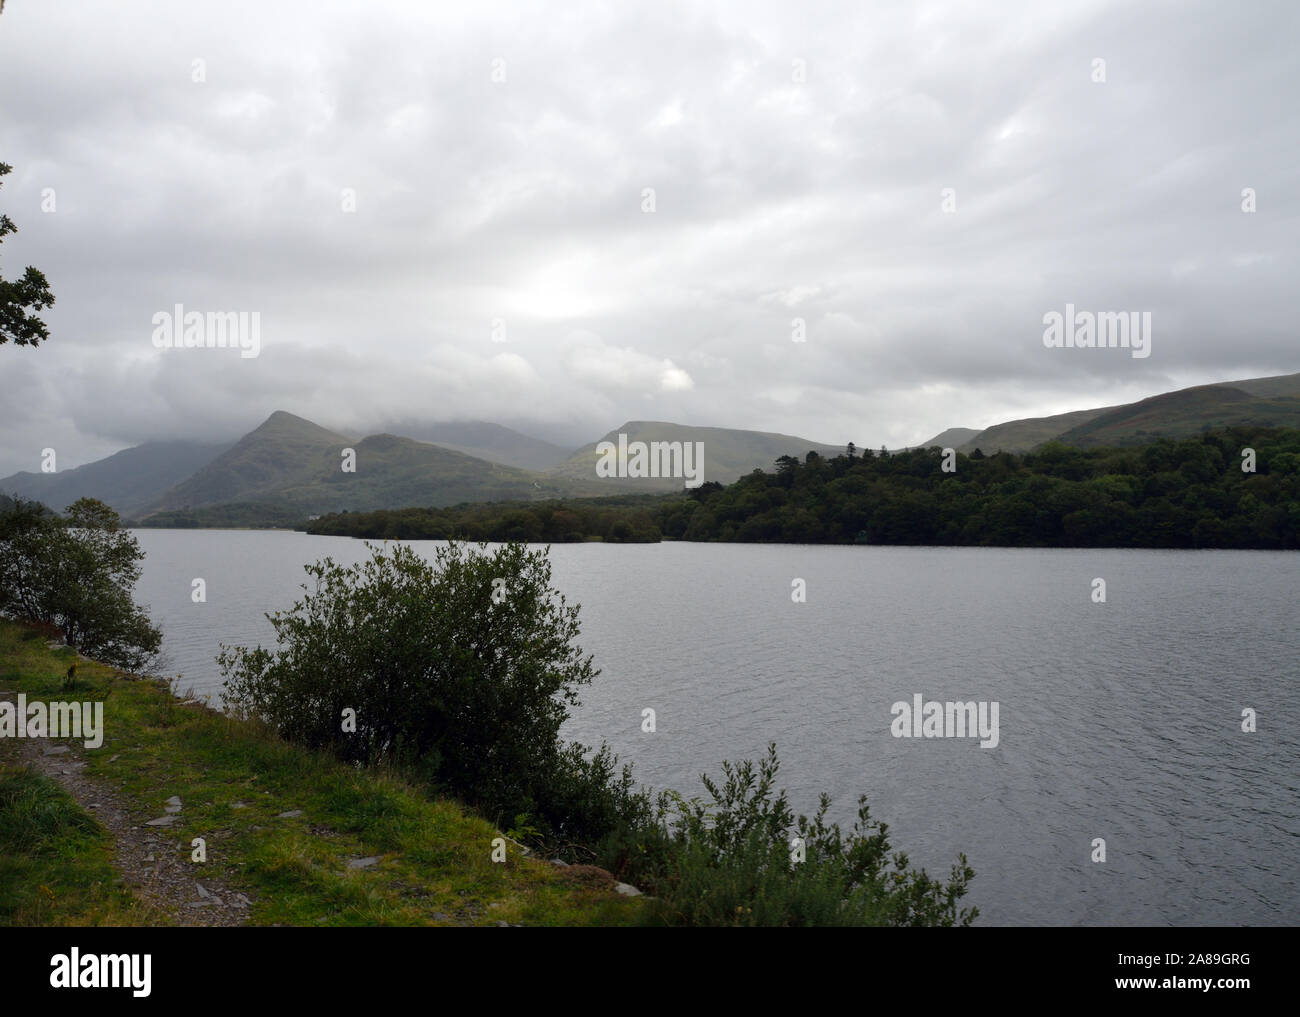 Jour nuageux, LLanberis Lake, au Pays de Galles. Vue depuis le lac Llanberis Gwynedd ; chemin de fer ; Pays de Galles ; Royaume-Uni ; Royaume-Uni ; l'Europe. Banque D'Images